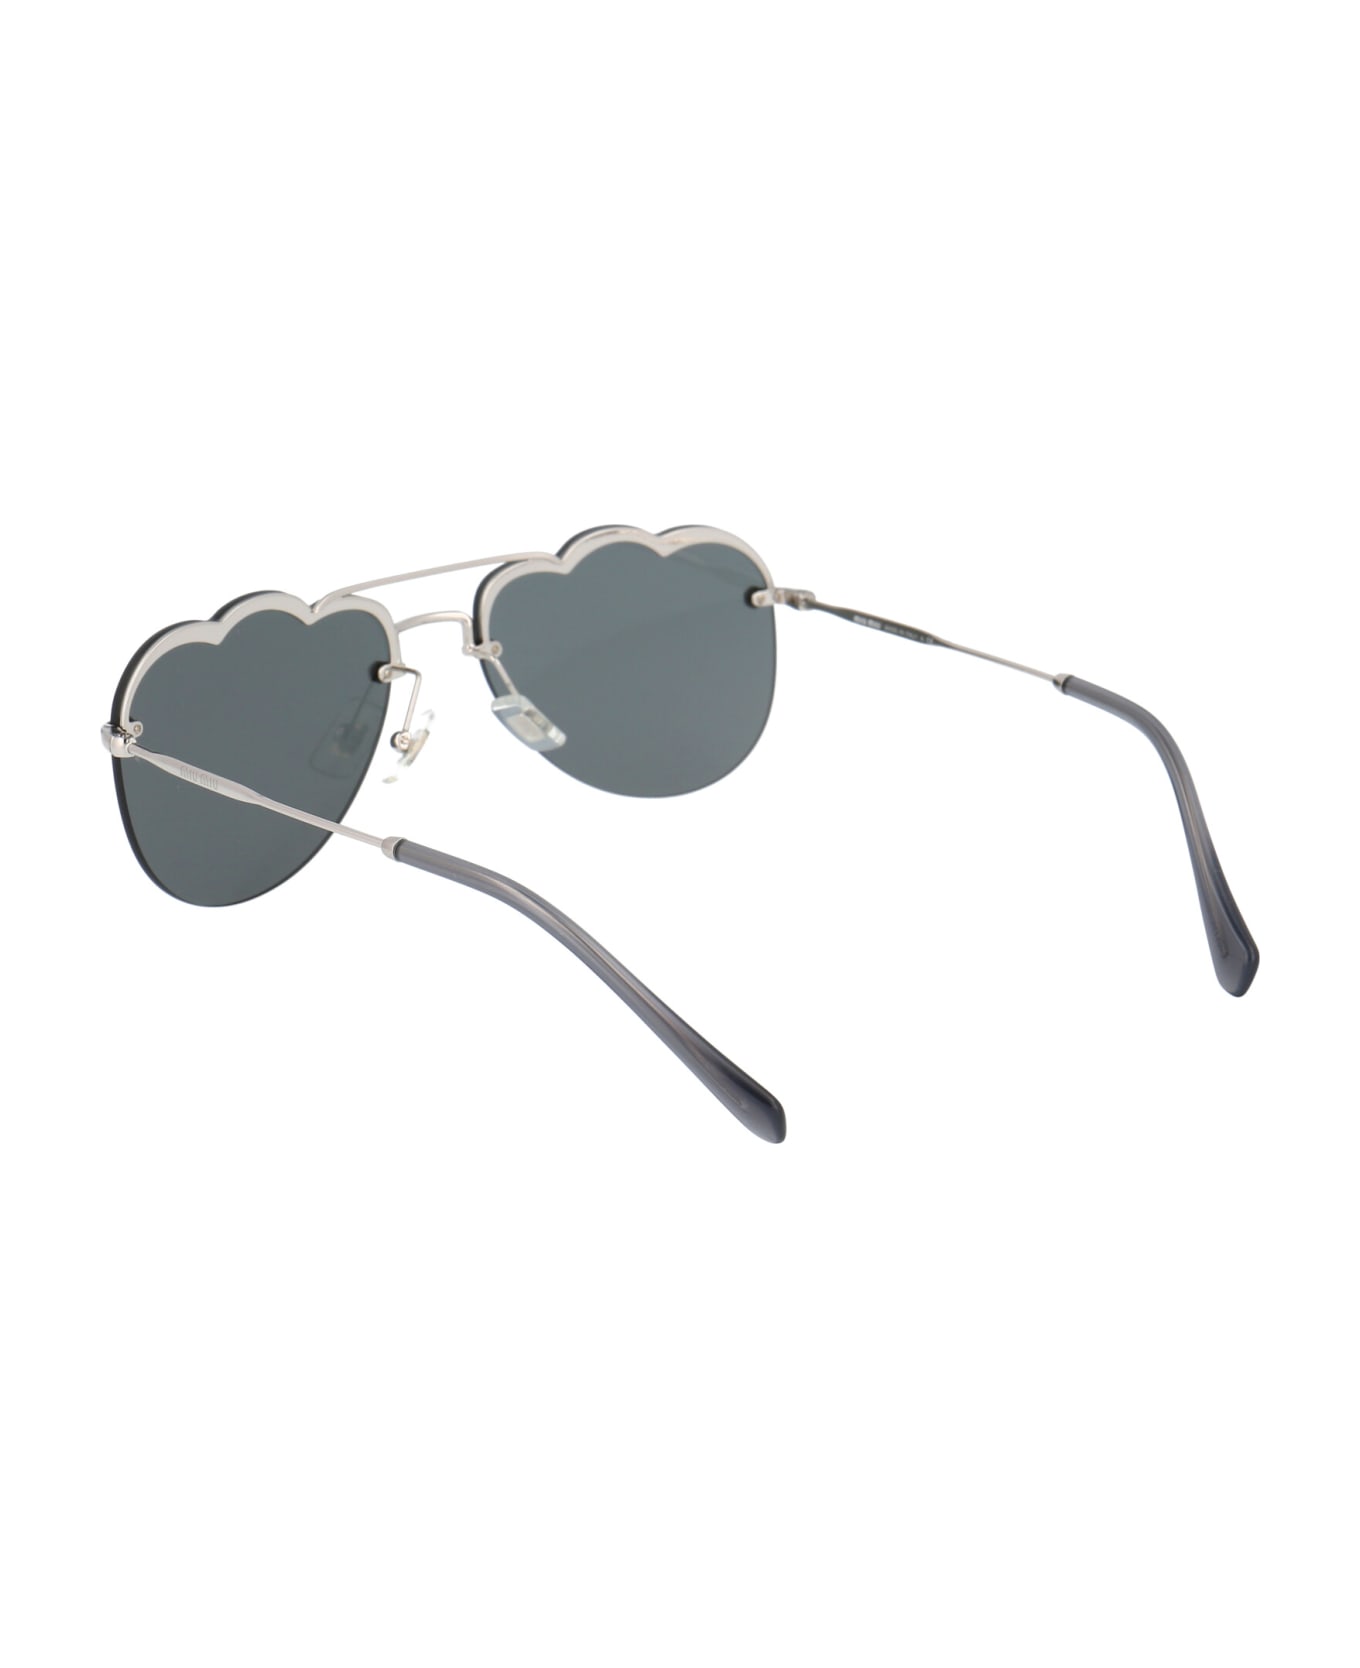 Miu Miu Eyewear 0mu 56us Sunglasses - 1BC175 SILVER